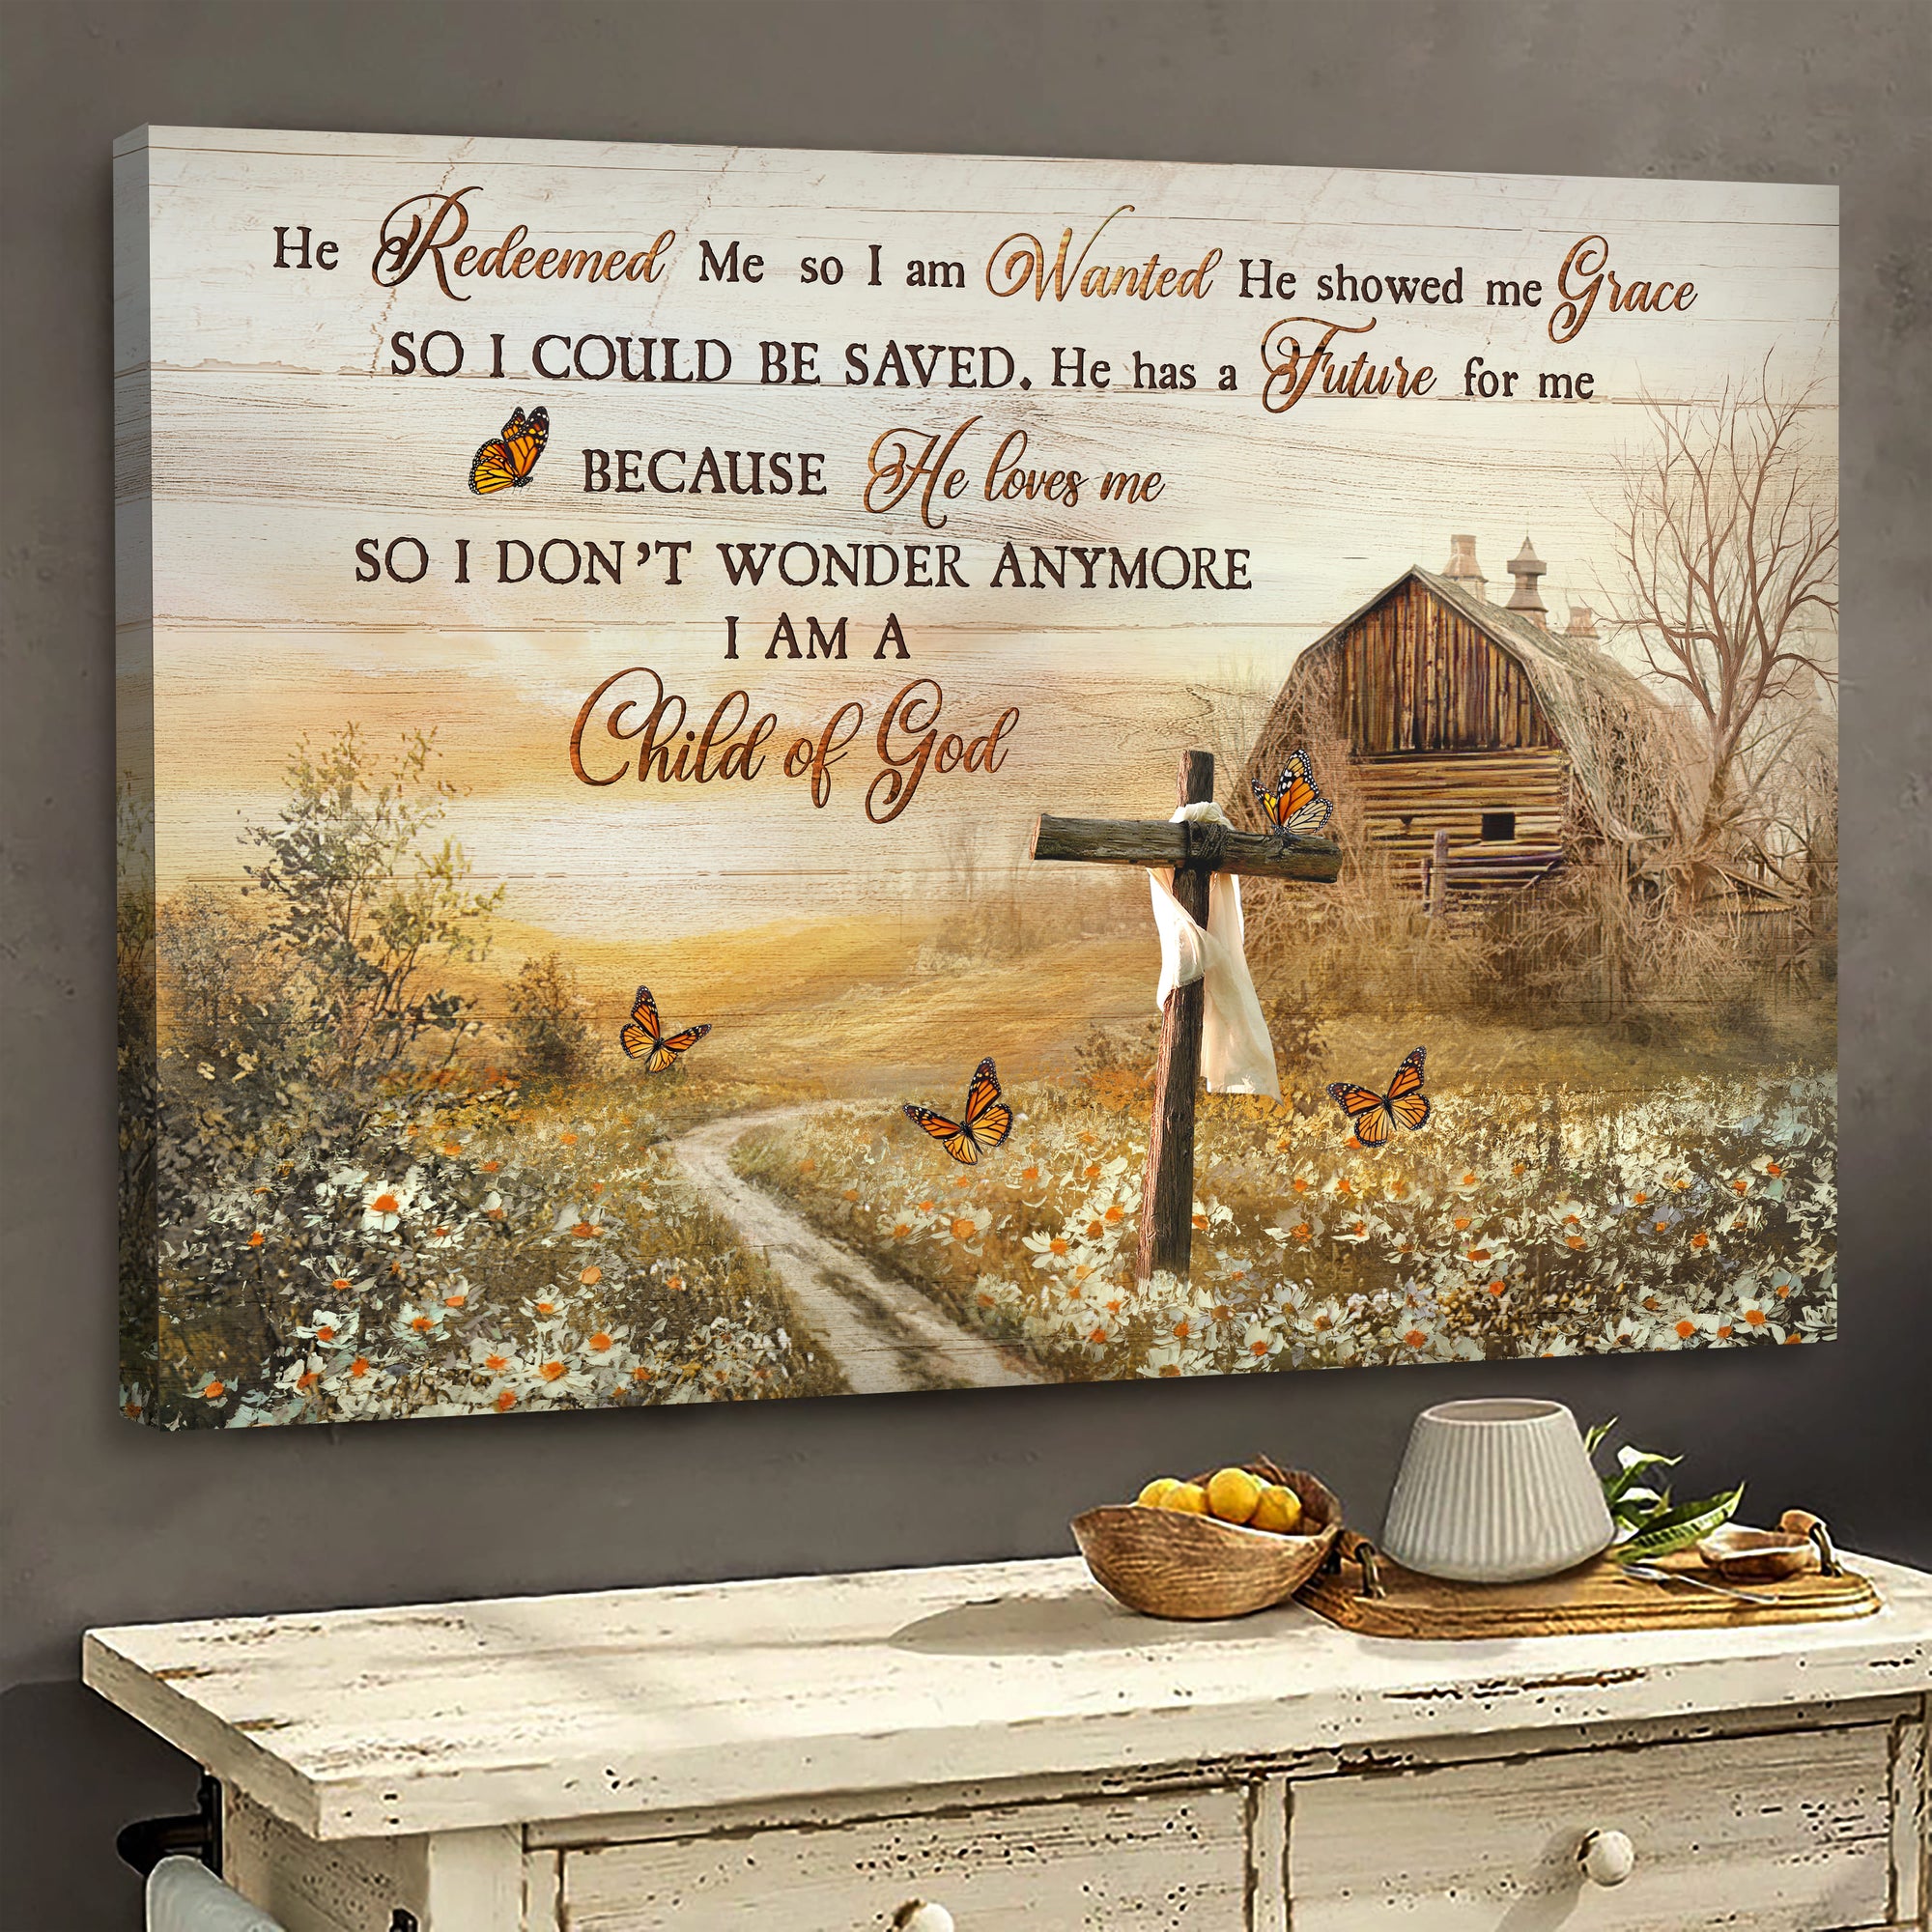 Jesus, Beautiful farm, old cross - He redeemed me Landscape Canvas Prints, Wall Art